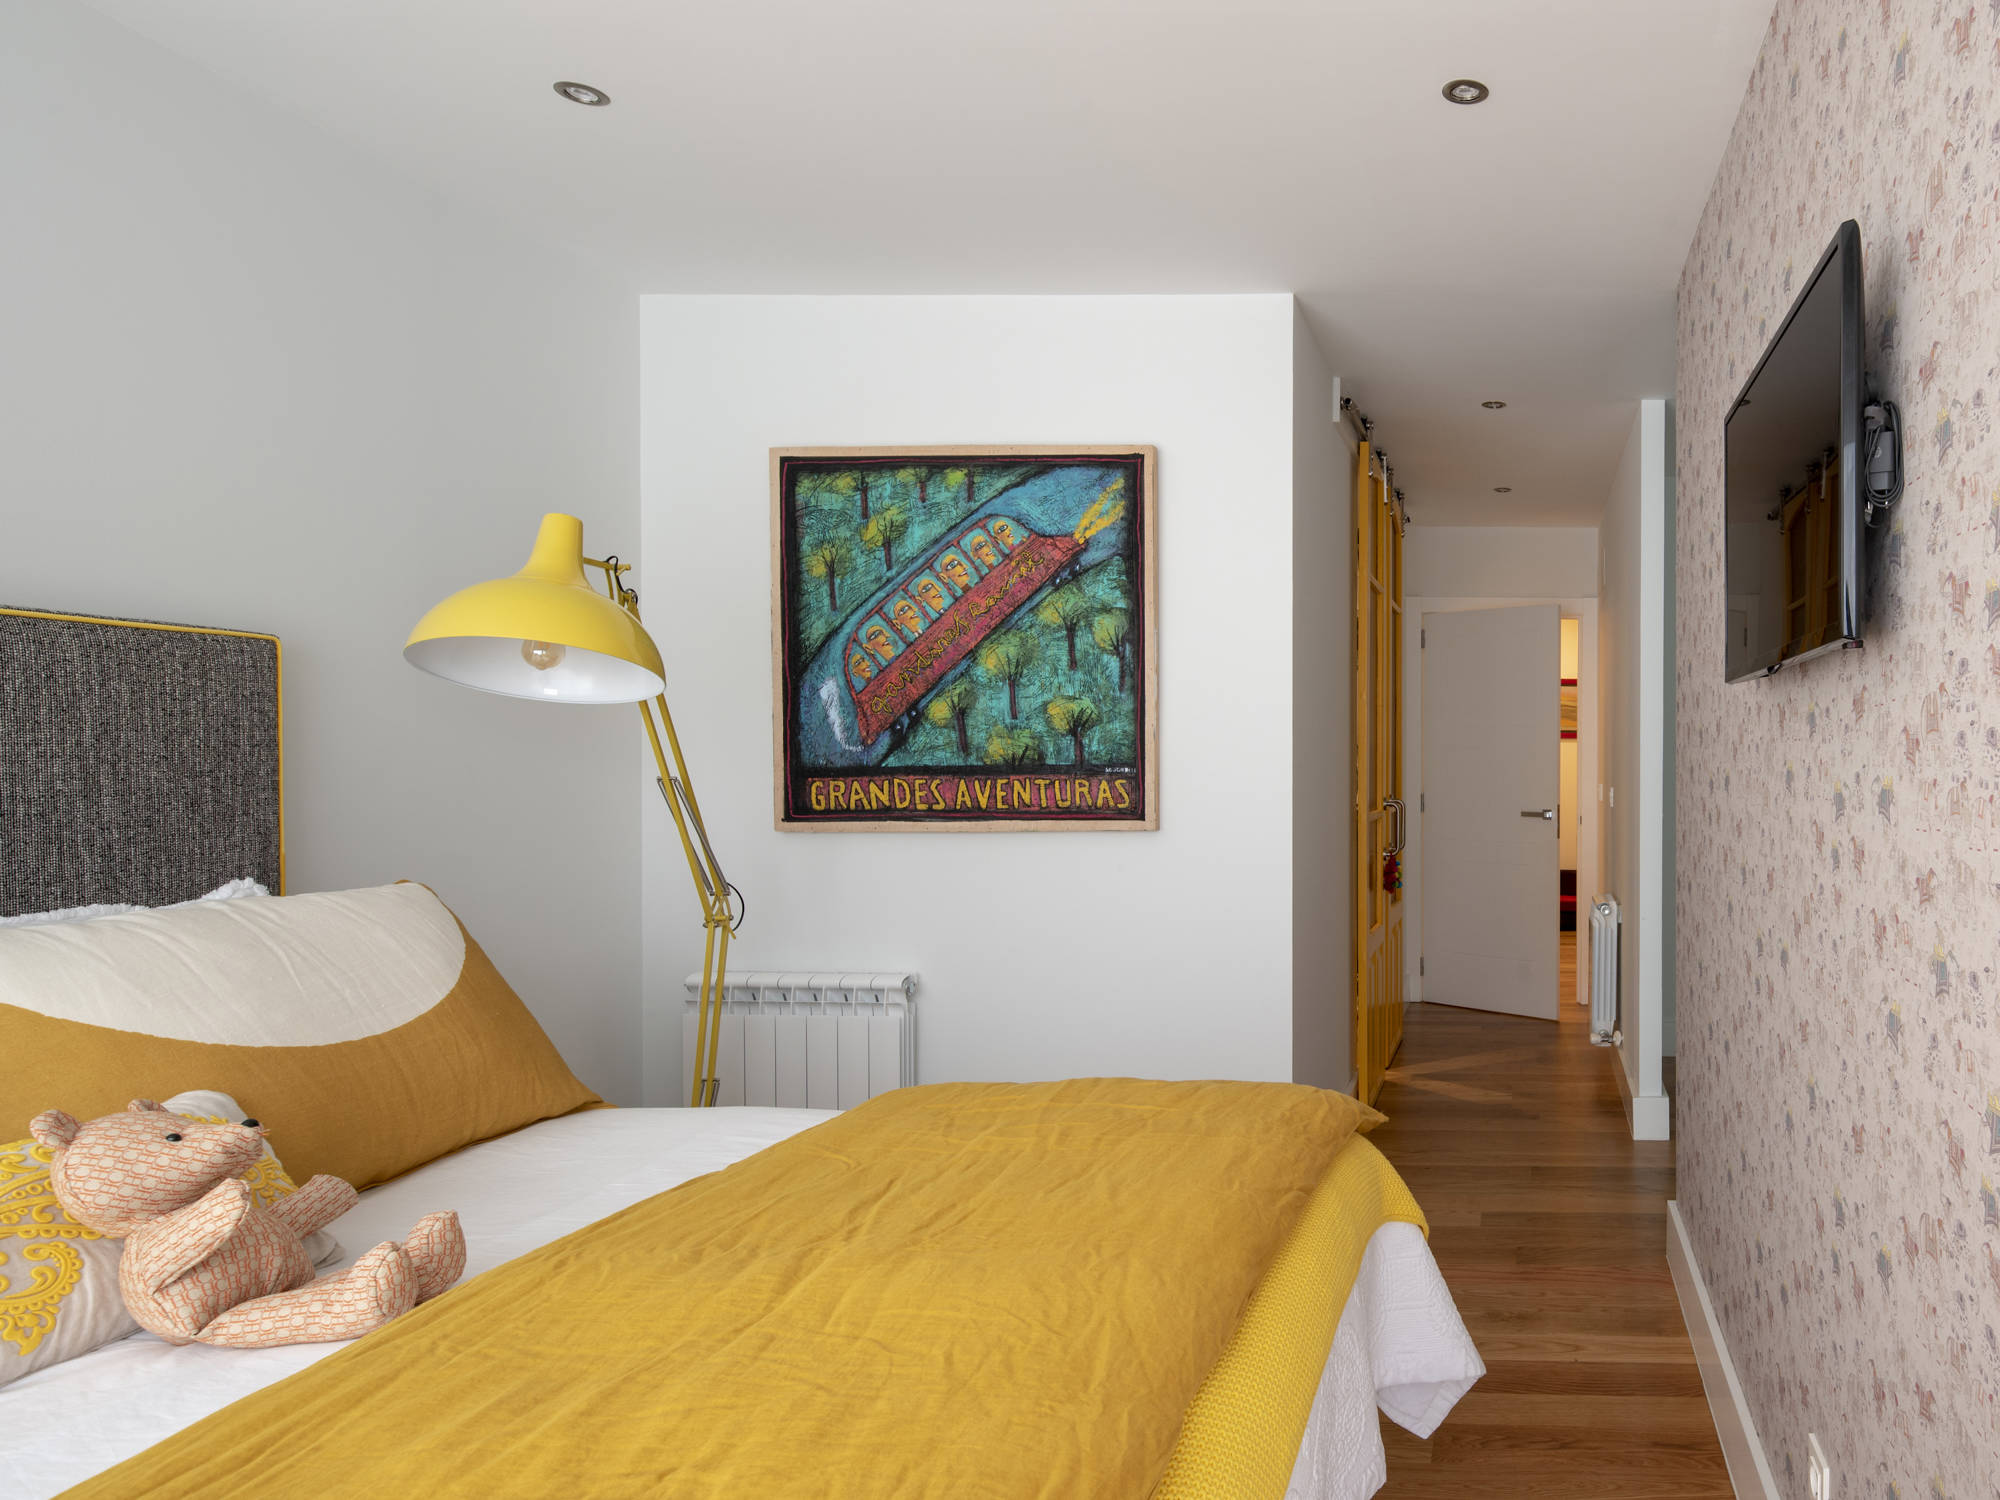 Dormitorio principal después de la reforma con papel pintado, ropa de cama amarilla y baño propio.